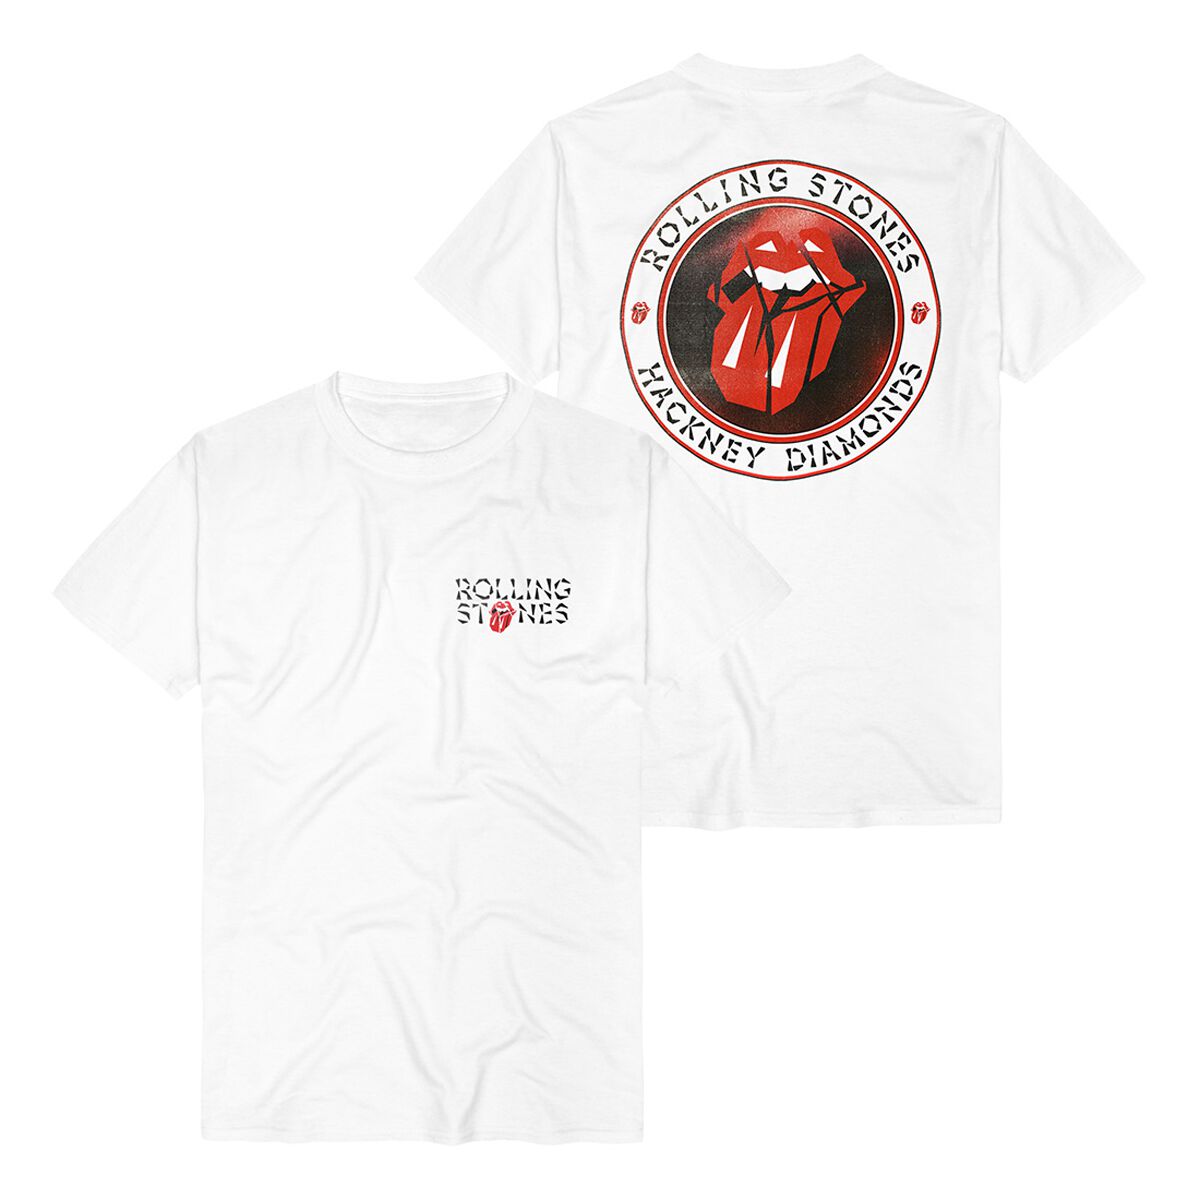 The Rolling Stones T-Shirt - Hackney Diamonds Circle Label - S bis 3XL - für Männer - Größe S - weiß  - Lizenziertes Merchandise!